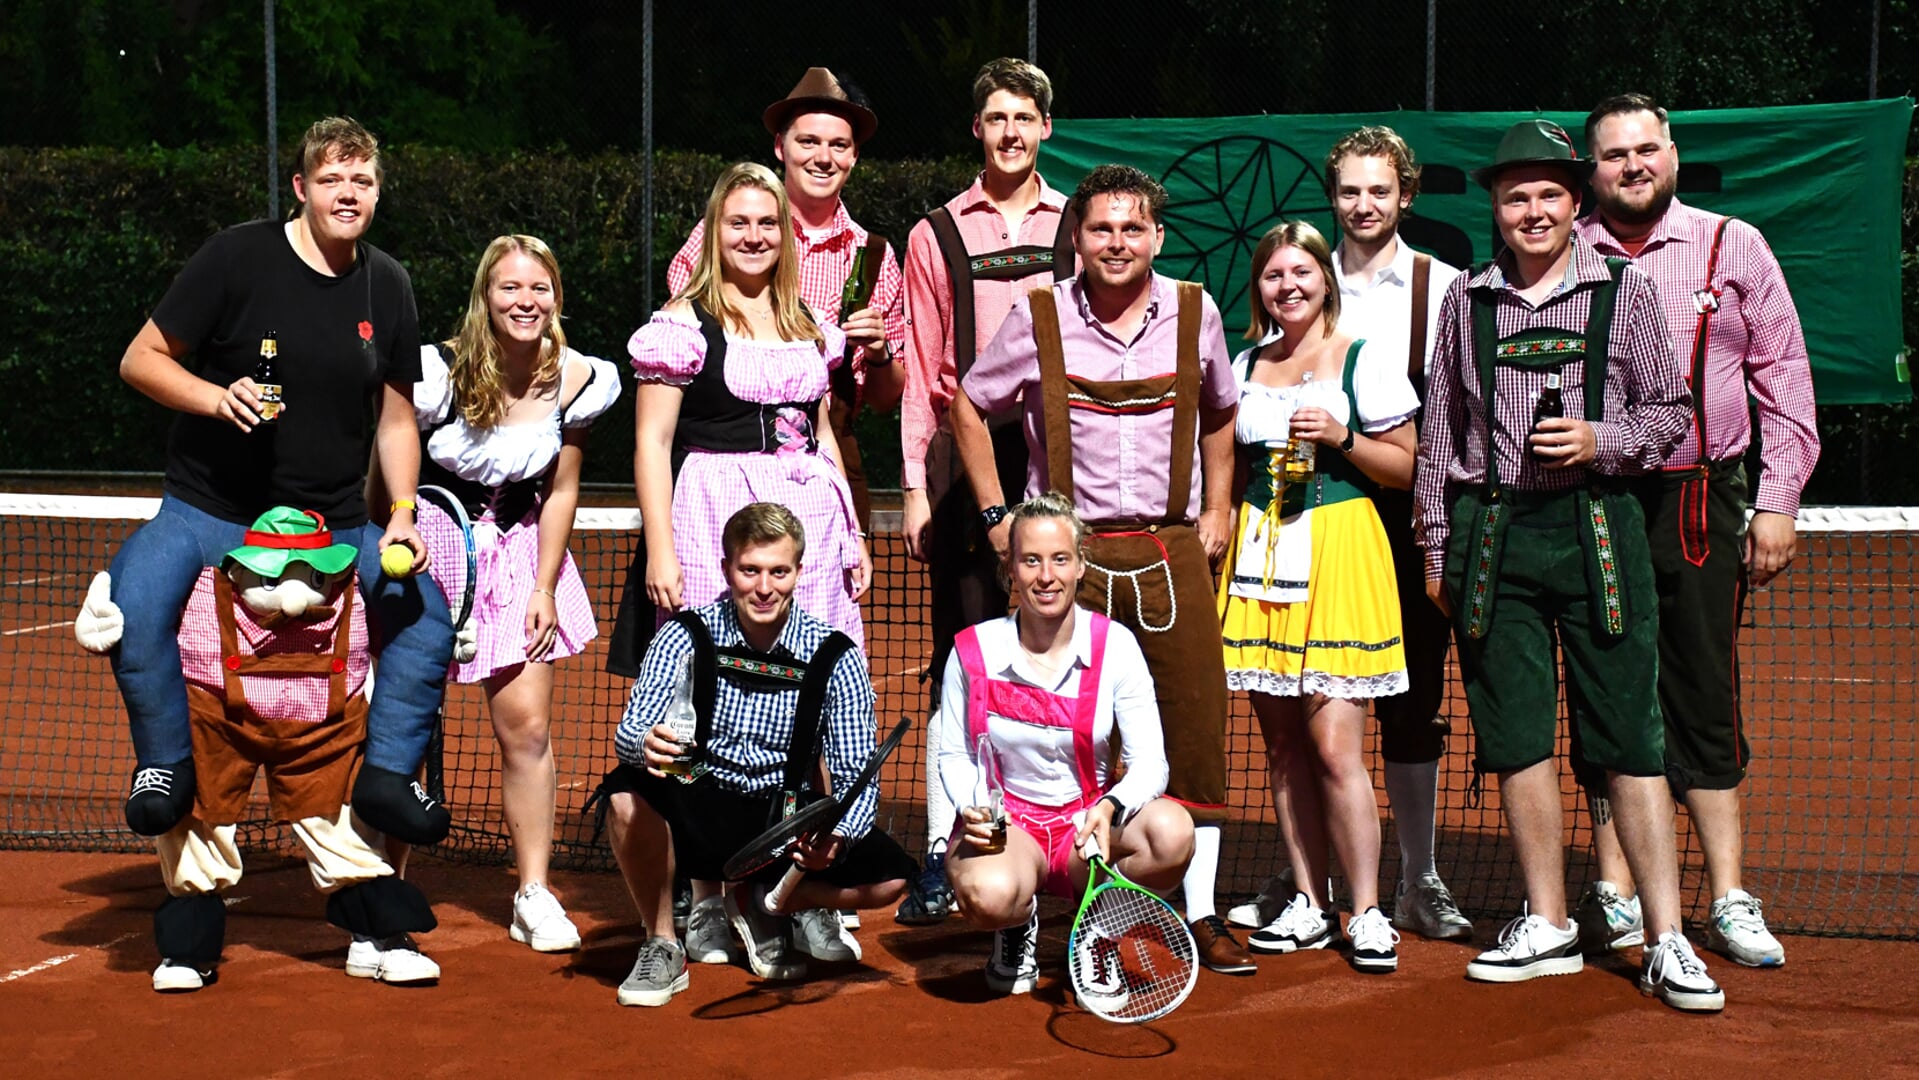 Behalve tennis was er ook een Tirolerfest bij TC Wijchgelsheim.